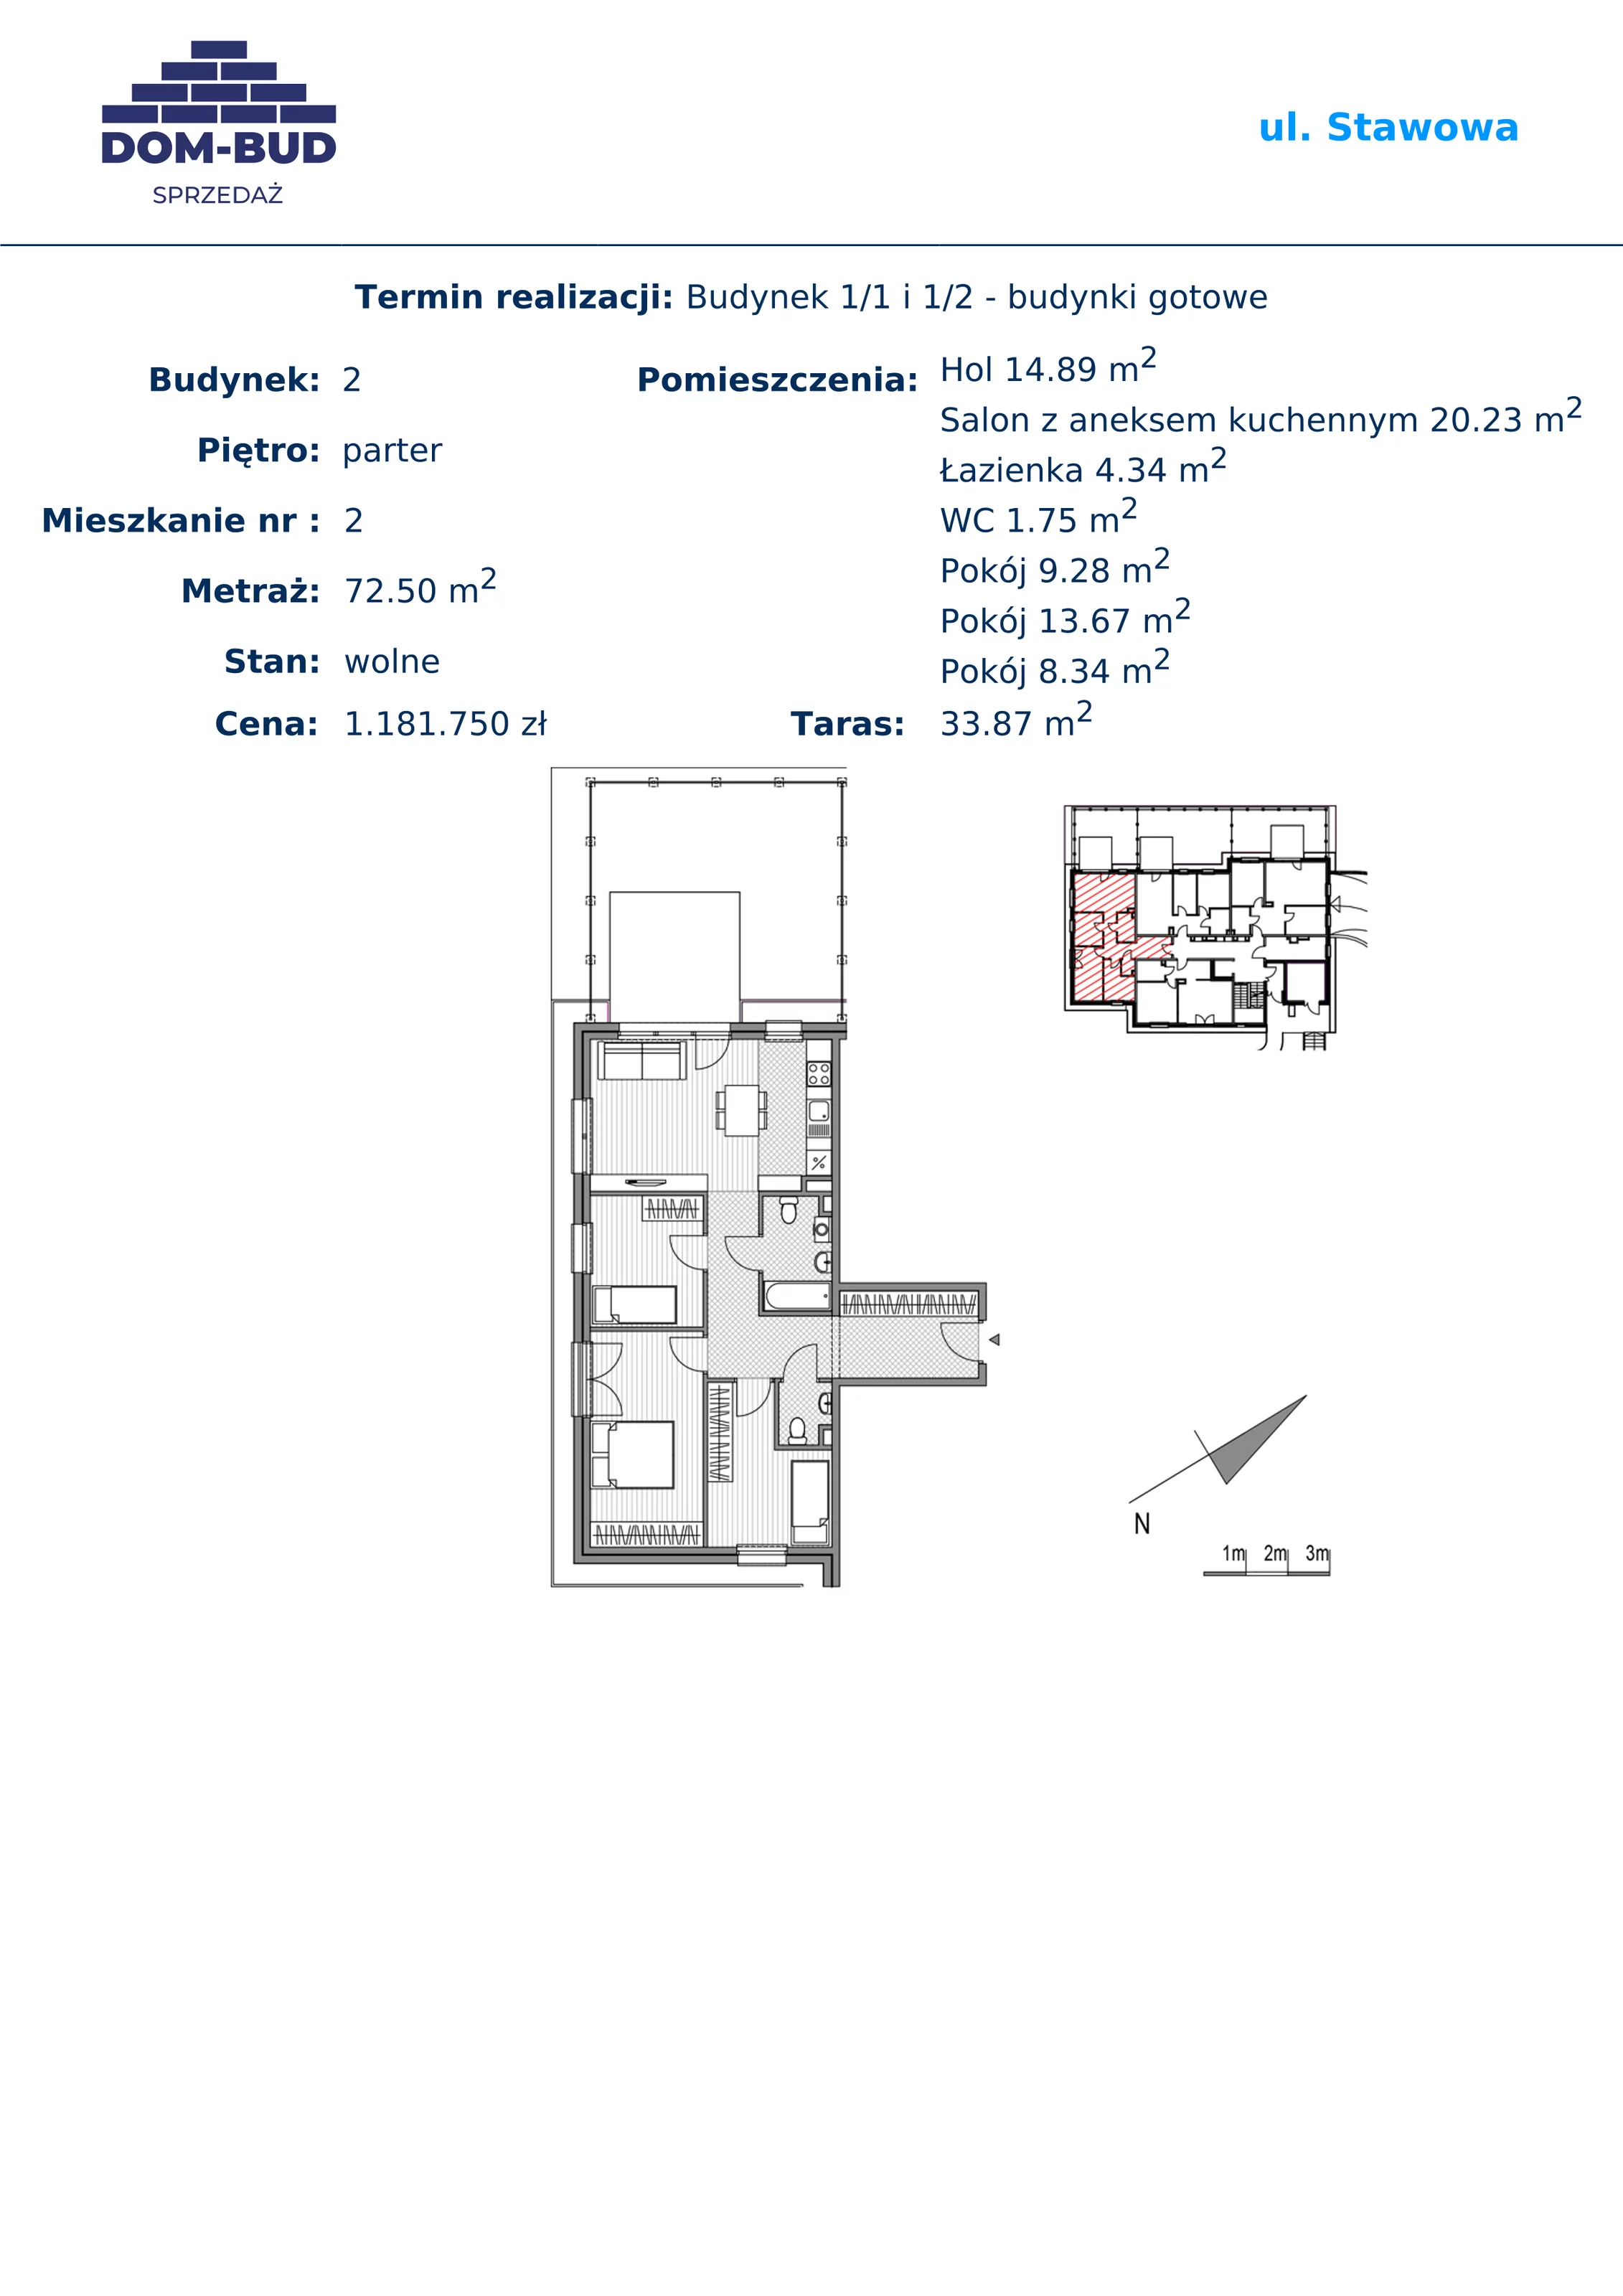 Mieszkanie 72,50 m², parter, oferta nr 1/2-2, ul. Stawowa, Kraków, Prądnik Biały, Bronowice Wielkie, ul. Stawowa 242